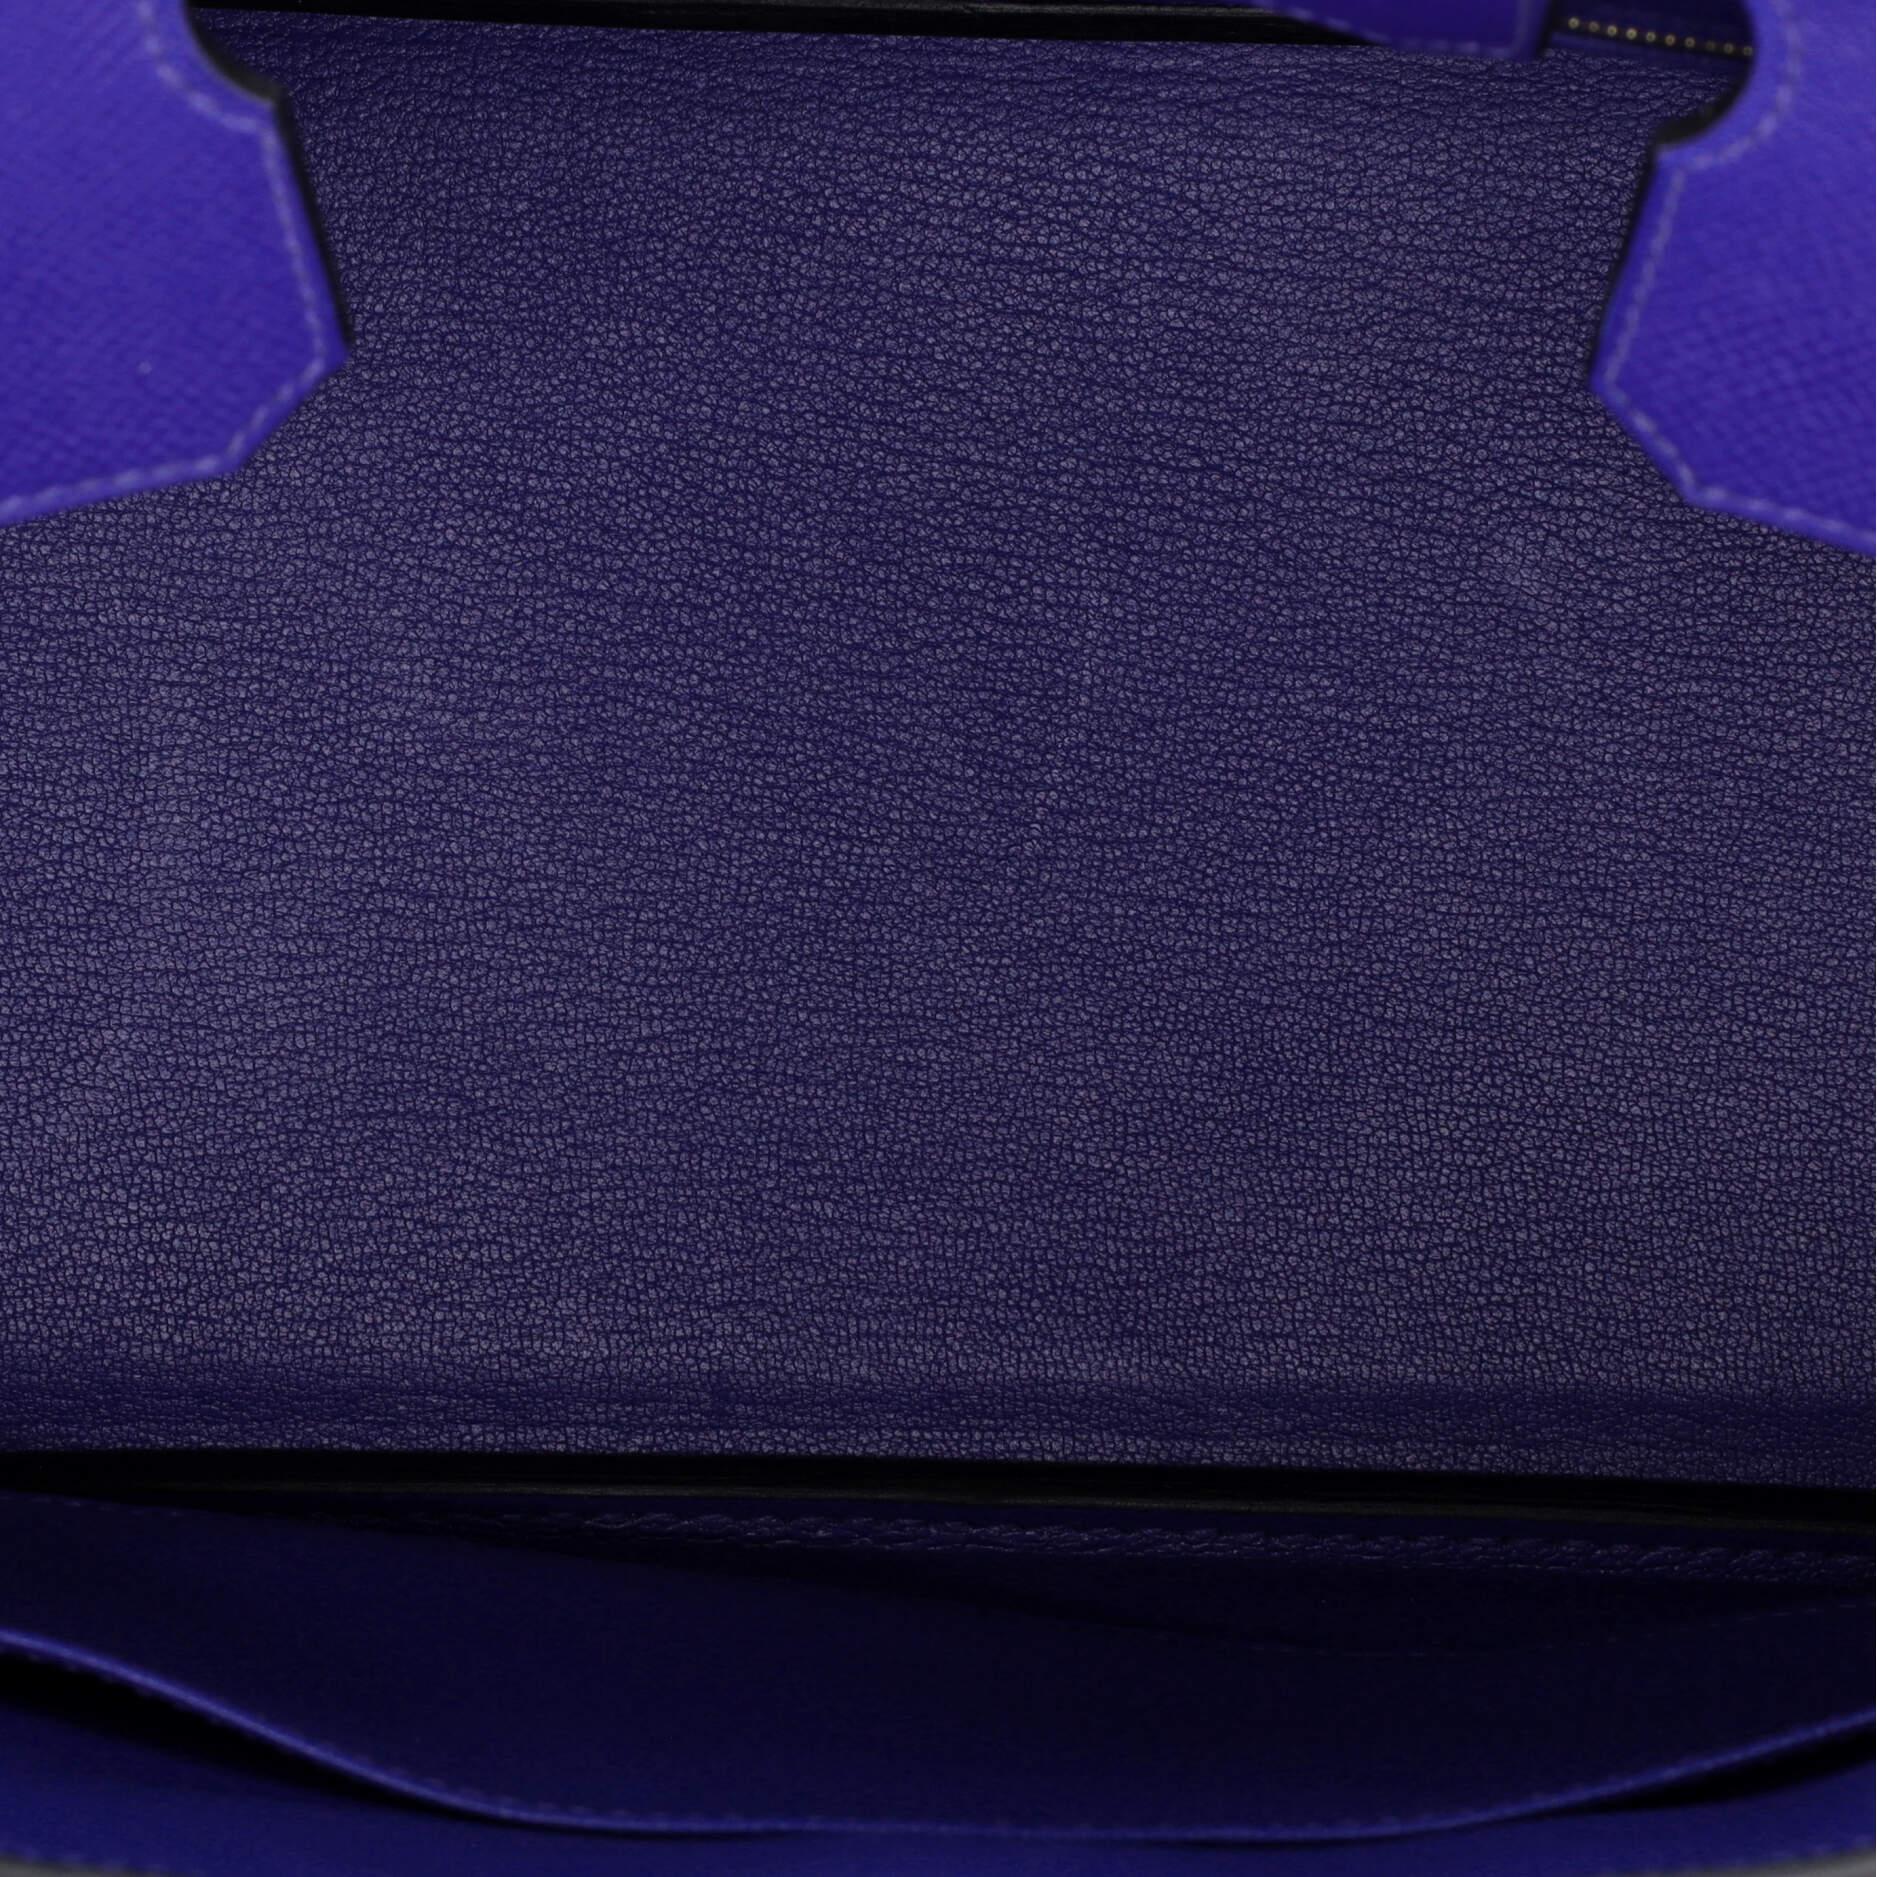 Hermes Birkin Handbag Bleu Electrique Epsom with Gold Hardware 30 For Sale 1